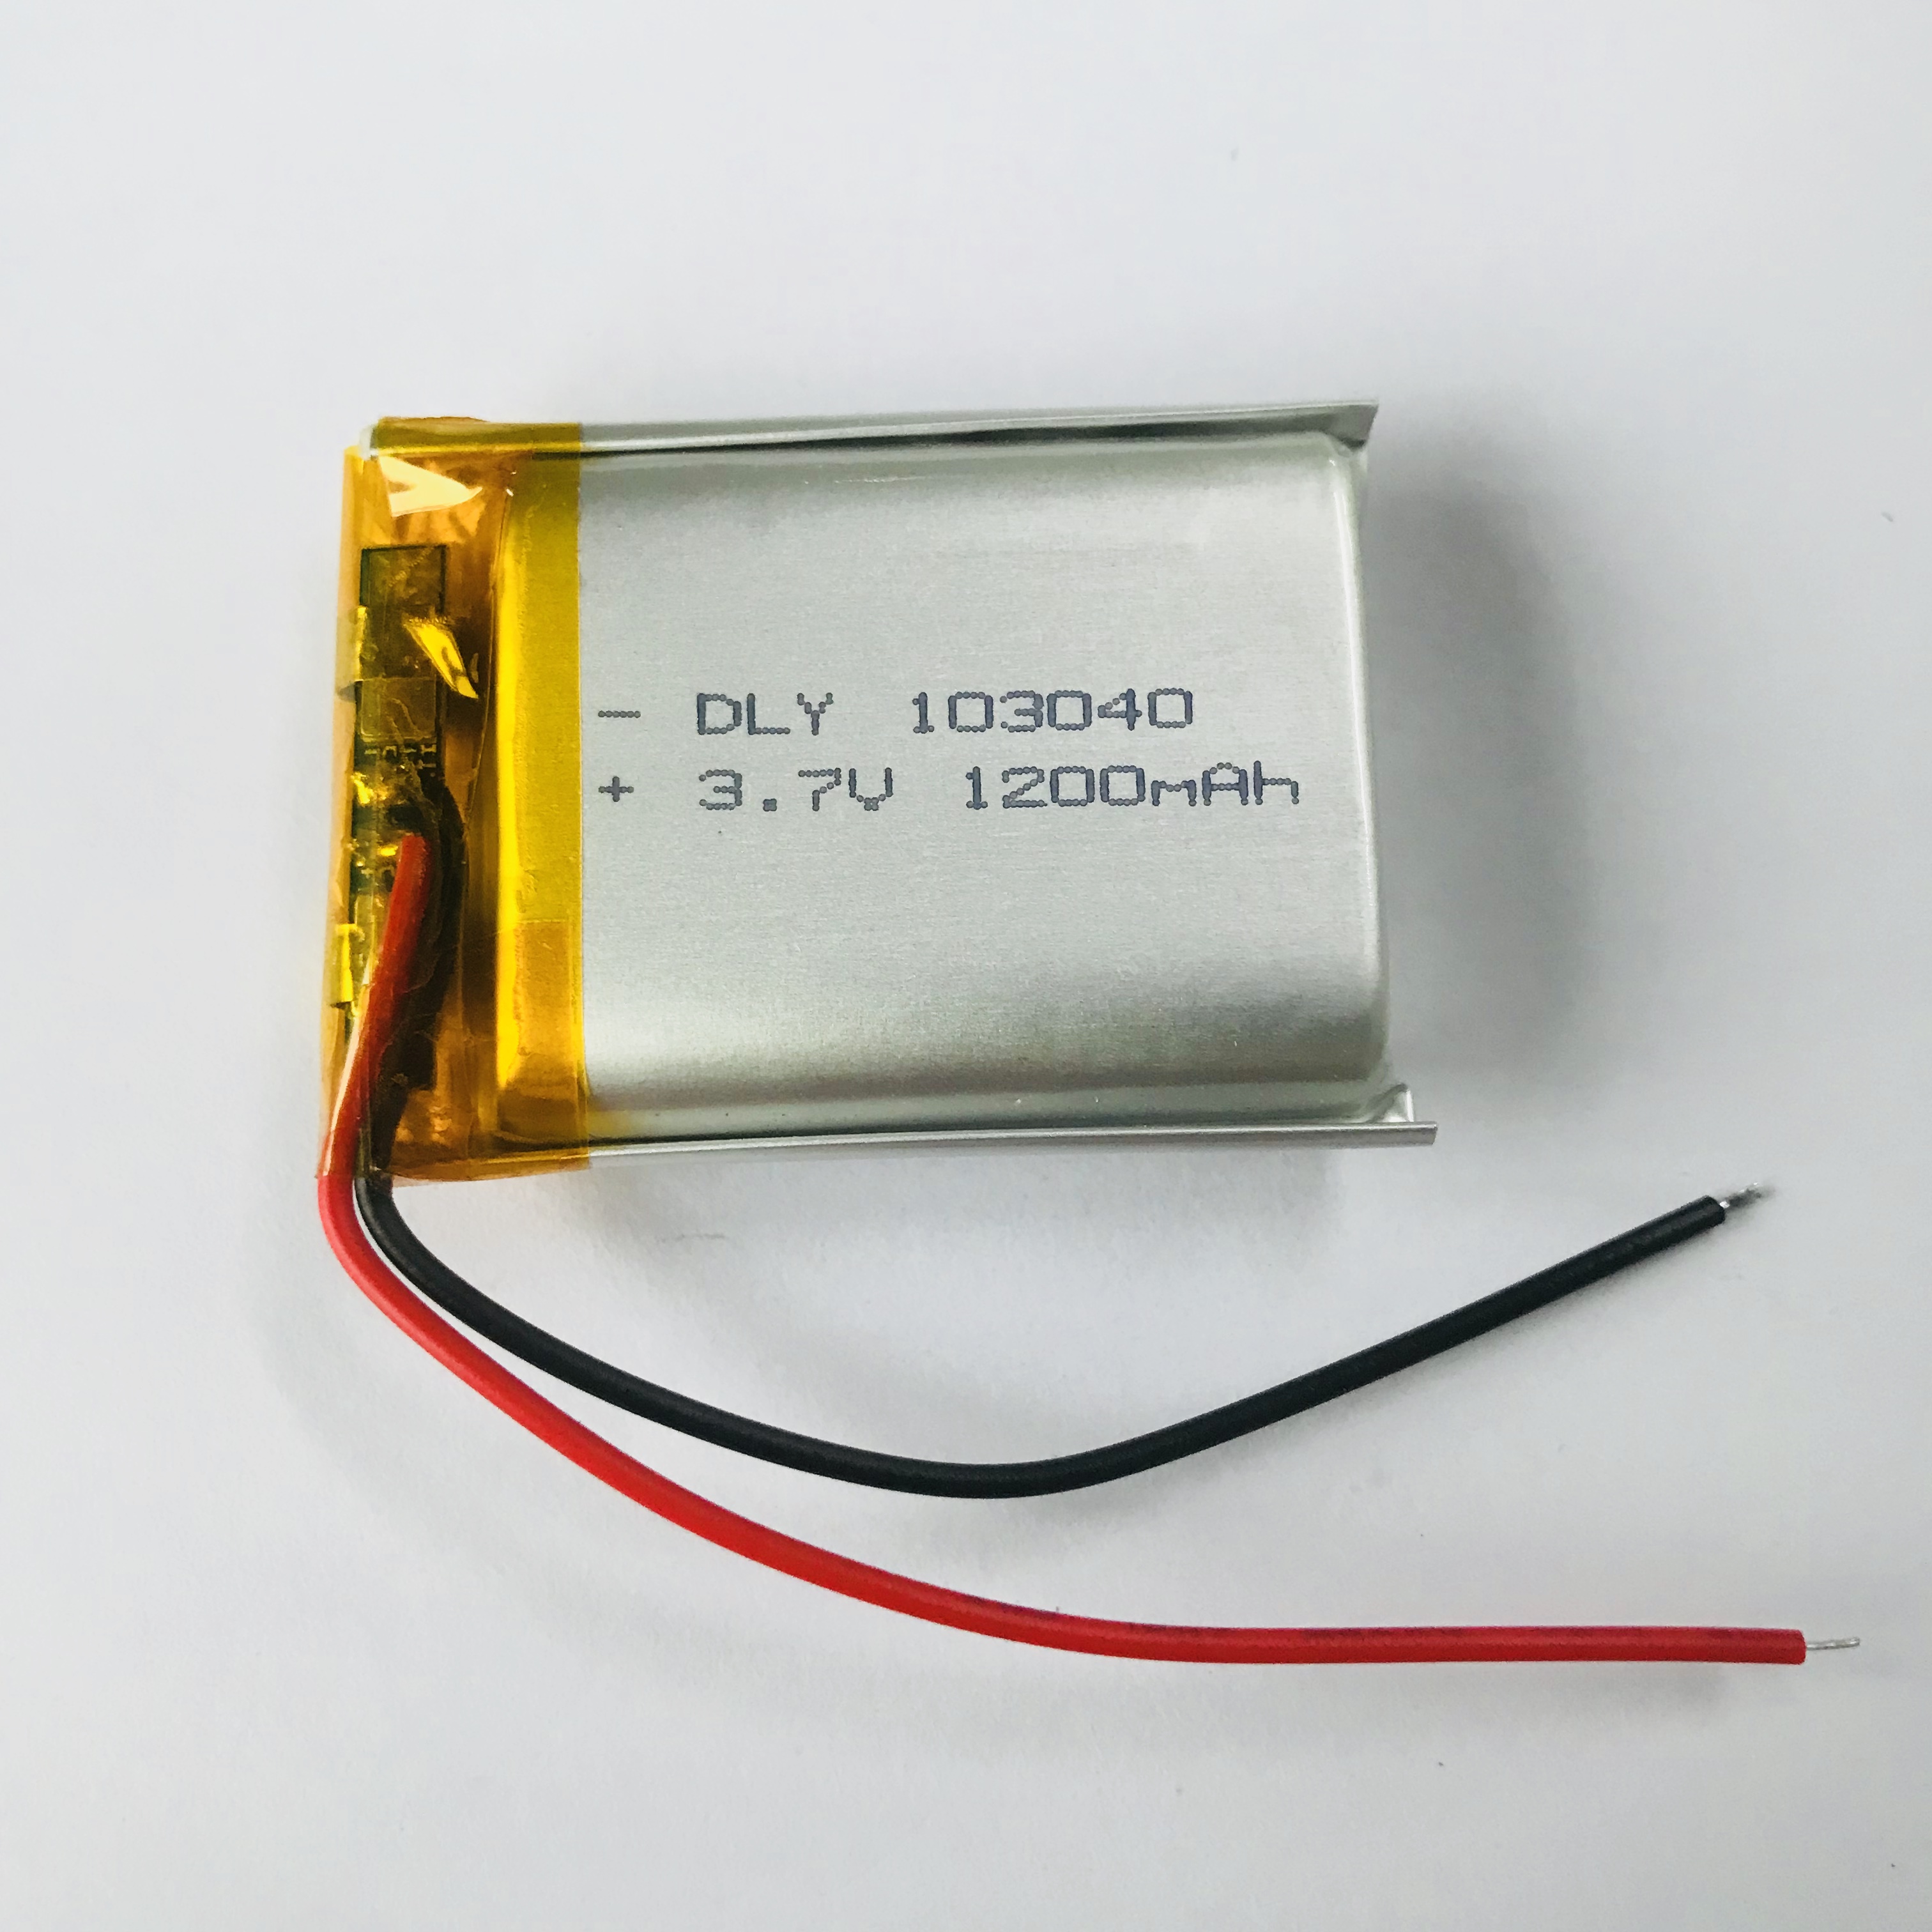 聚合物锂电池103040 导航仪无线蓝牙音箱耳机小电芯 充电仓